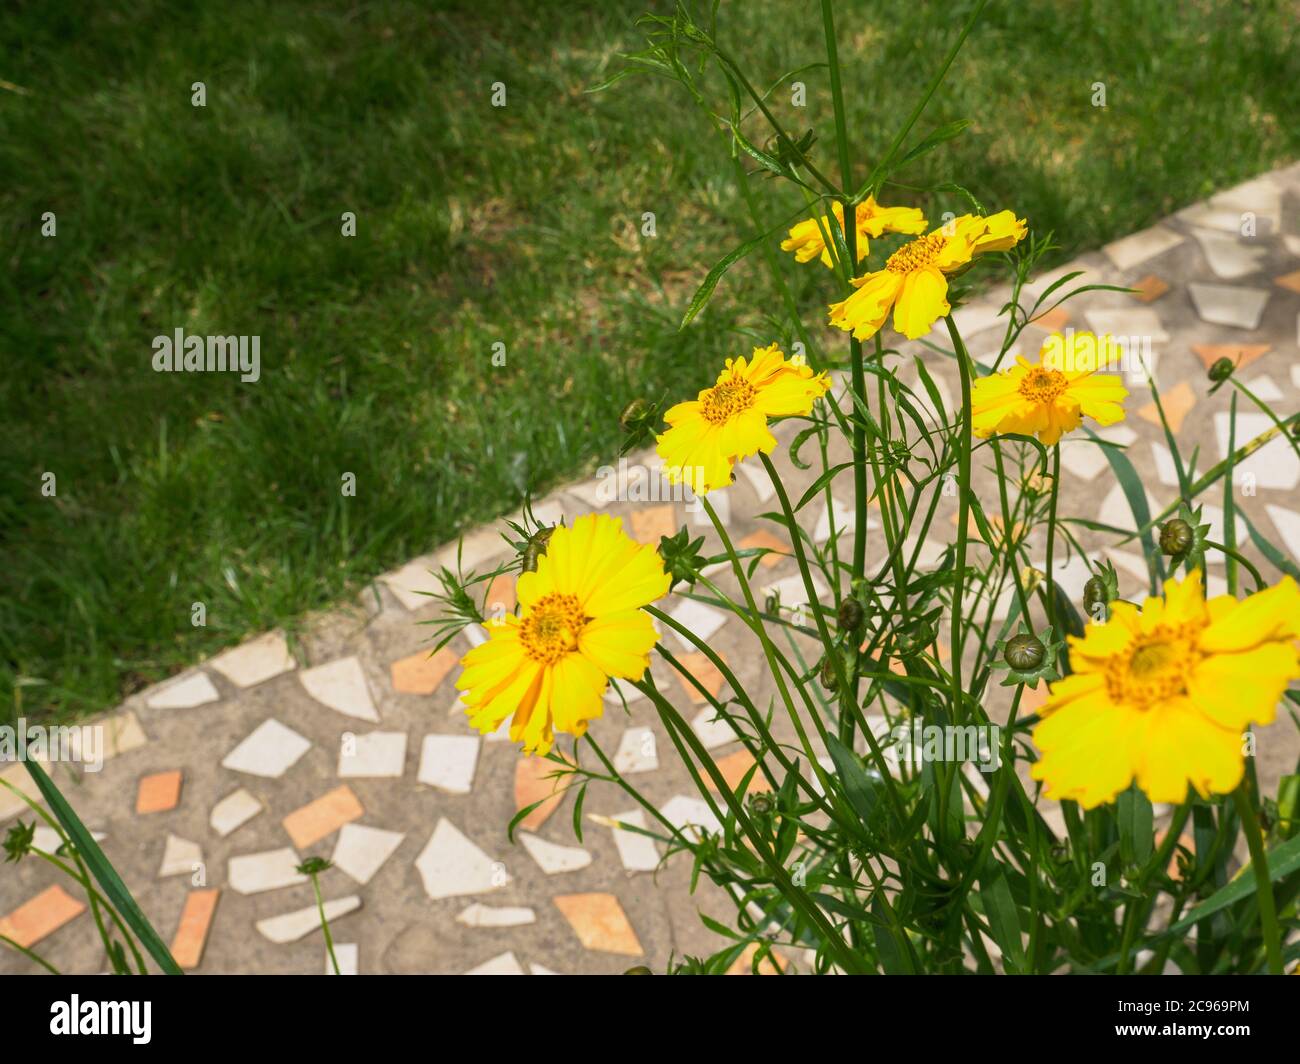 Bel giallo Coreopsis lanceolata fiori perenni fiorire in un giorno d'estate, percorso piastrellato sullo sfondo. Foto Stock